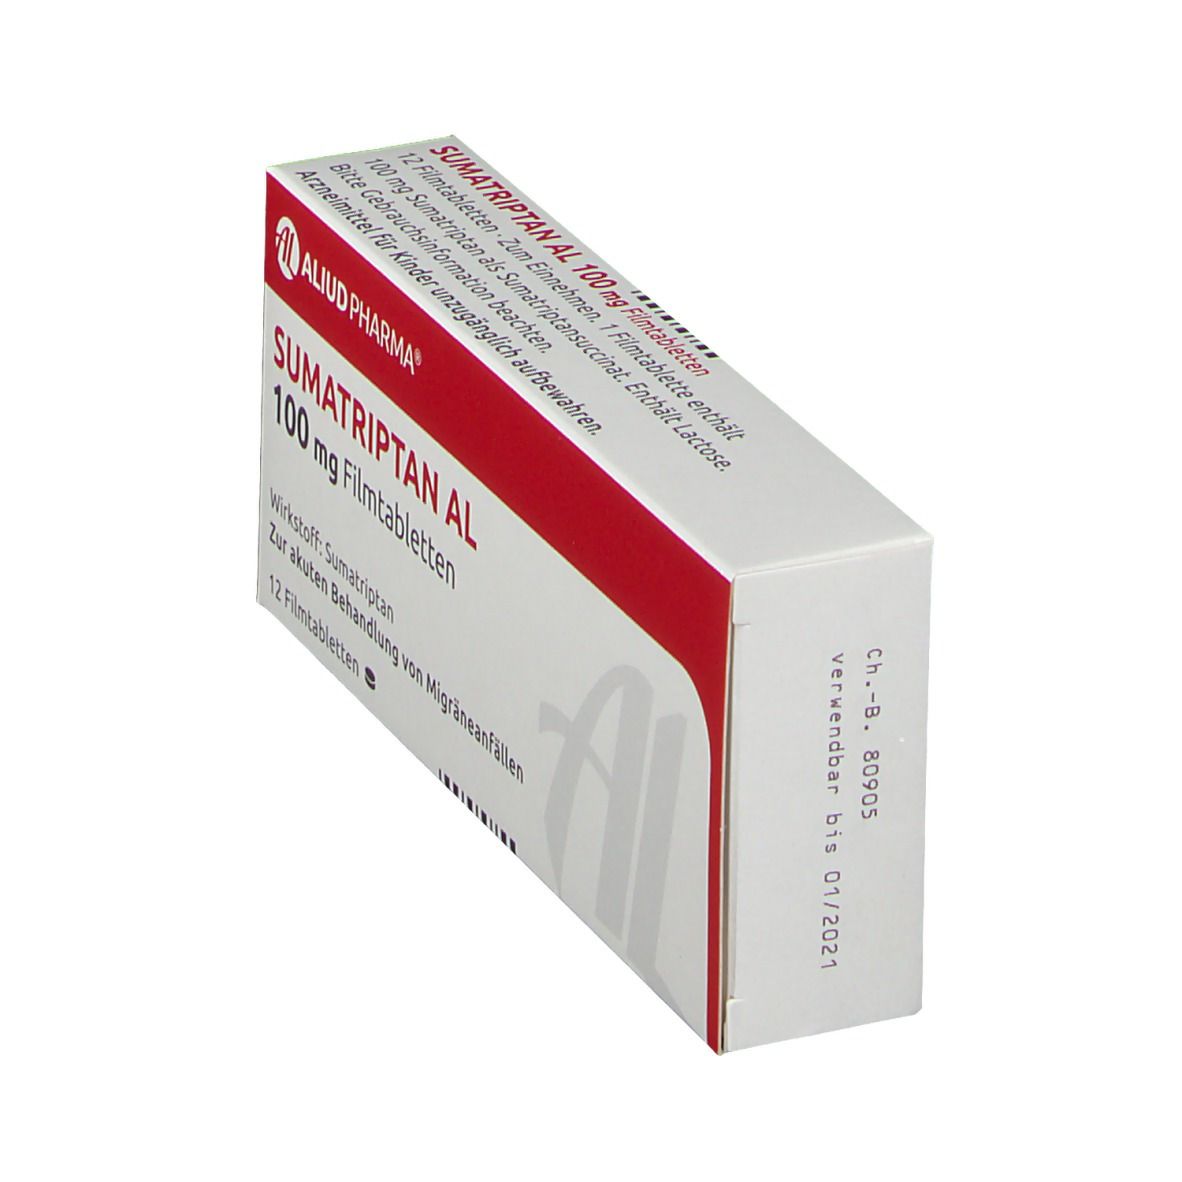 Sumatriptan AL 100 mg